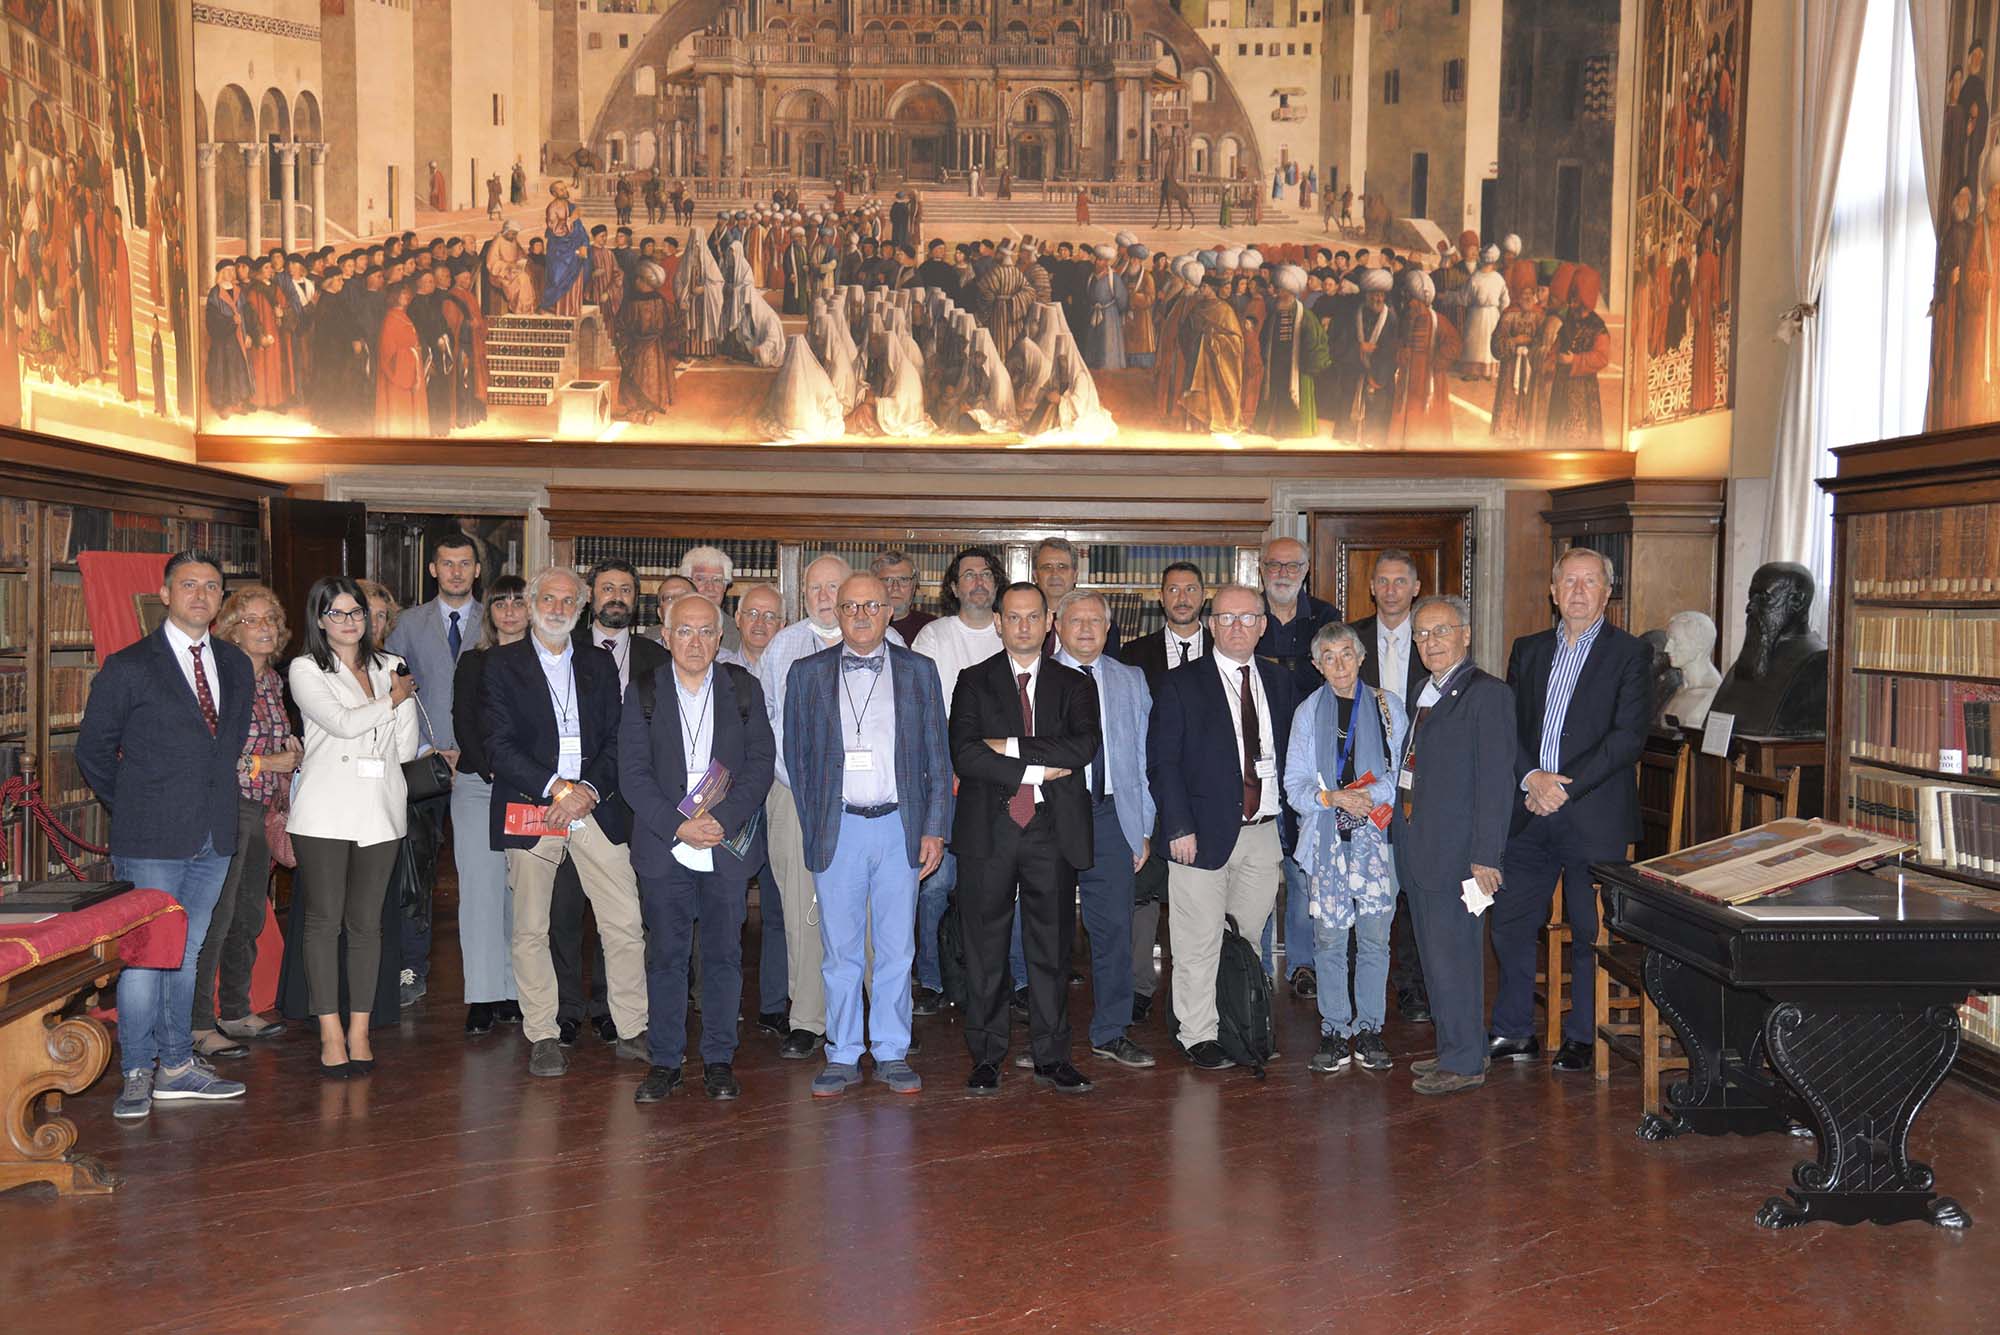 Magi Group festeggia i suoi quindici anni di storia nella Scuola Grande di San Marco a Venezia